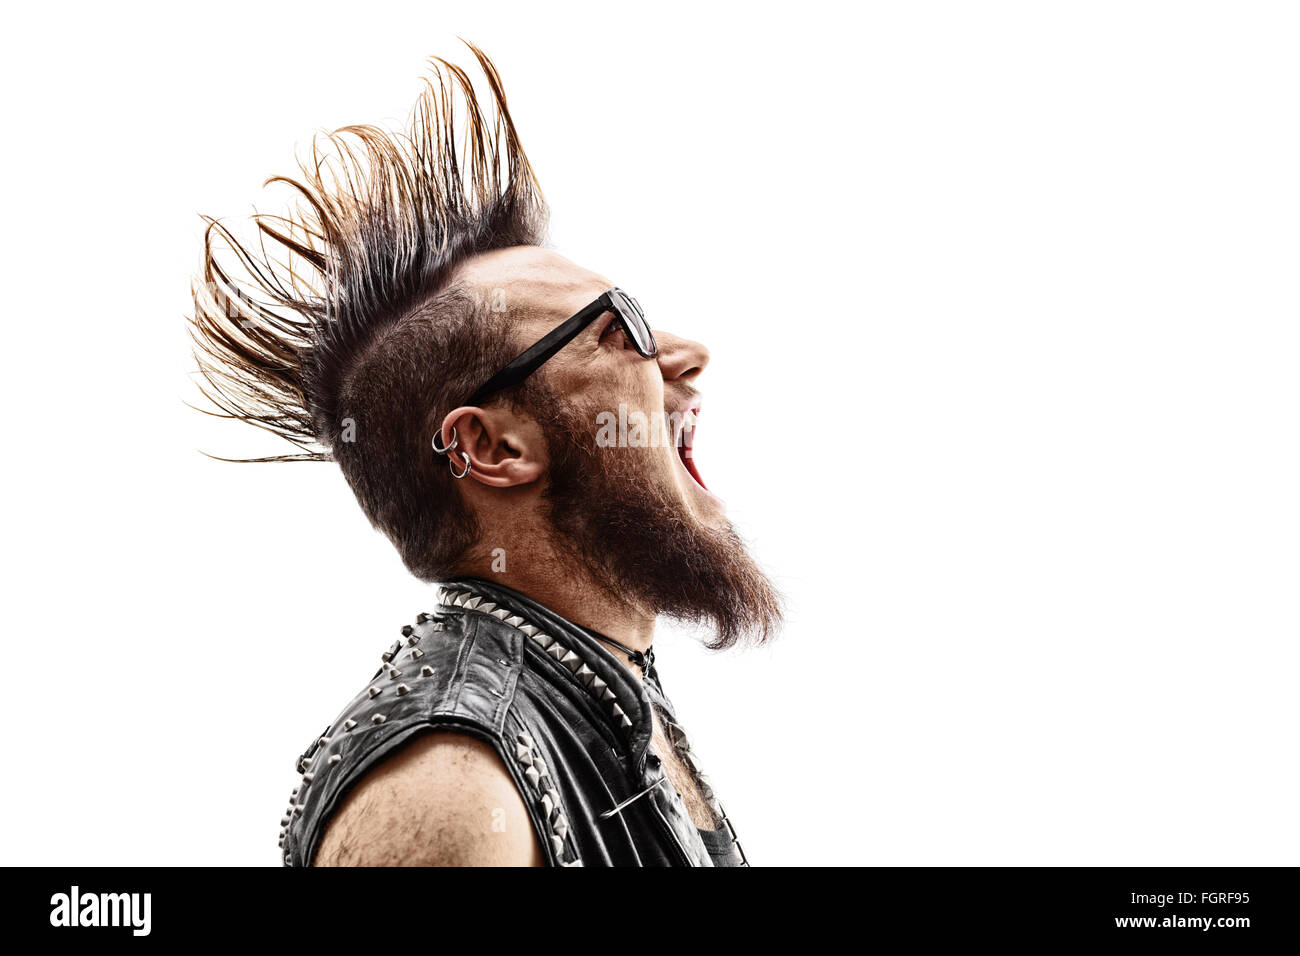 Shot Profil d'un jeune en colère punk rocker avec un Mohawk hairstyle crier isolé sur fond blanc Banque D'Images